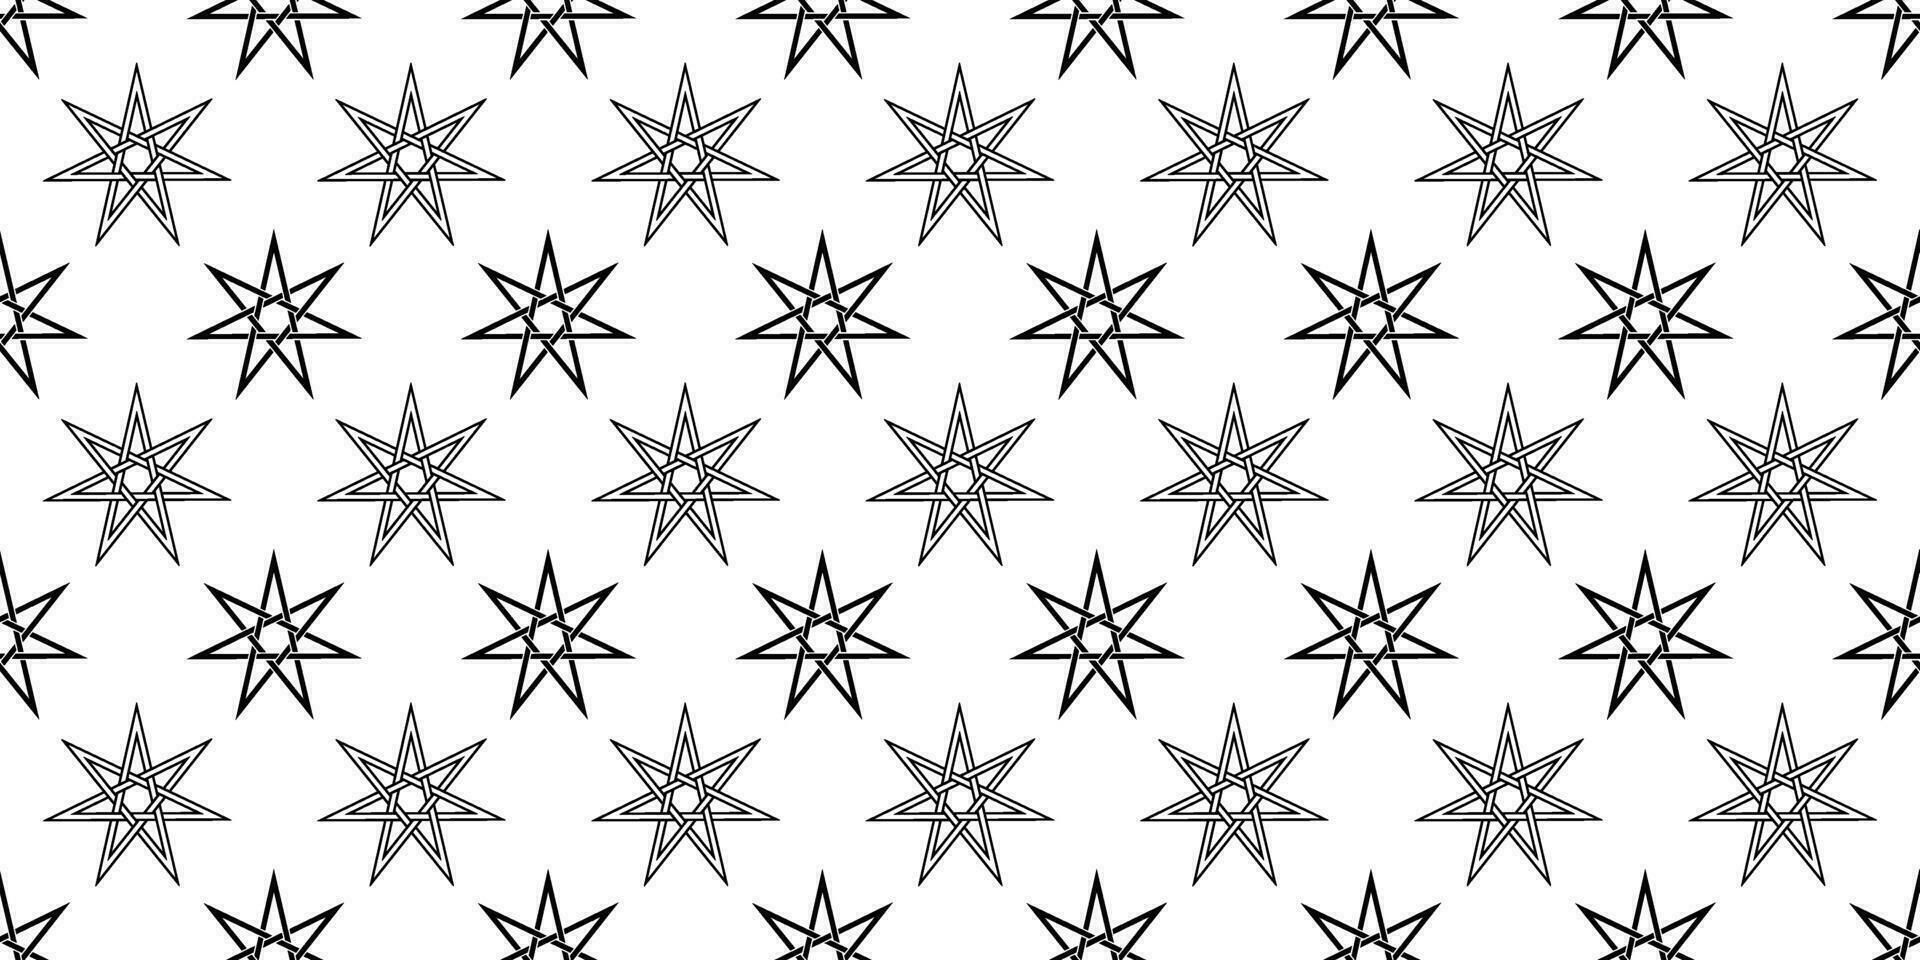 zwart wit elven ster naadloos patroon vector